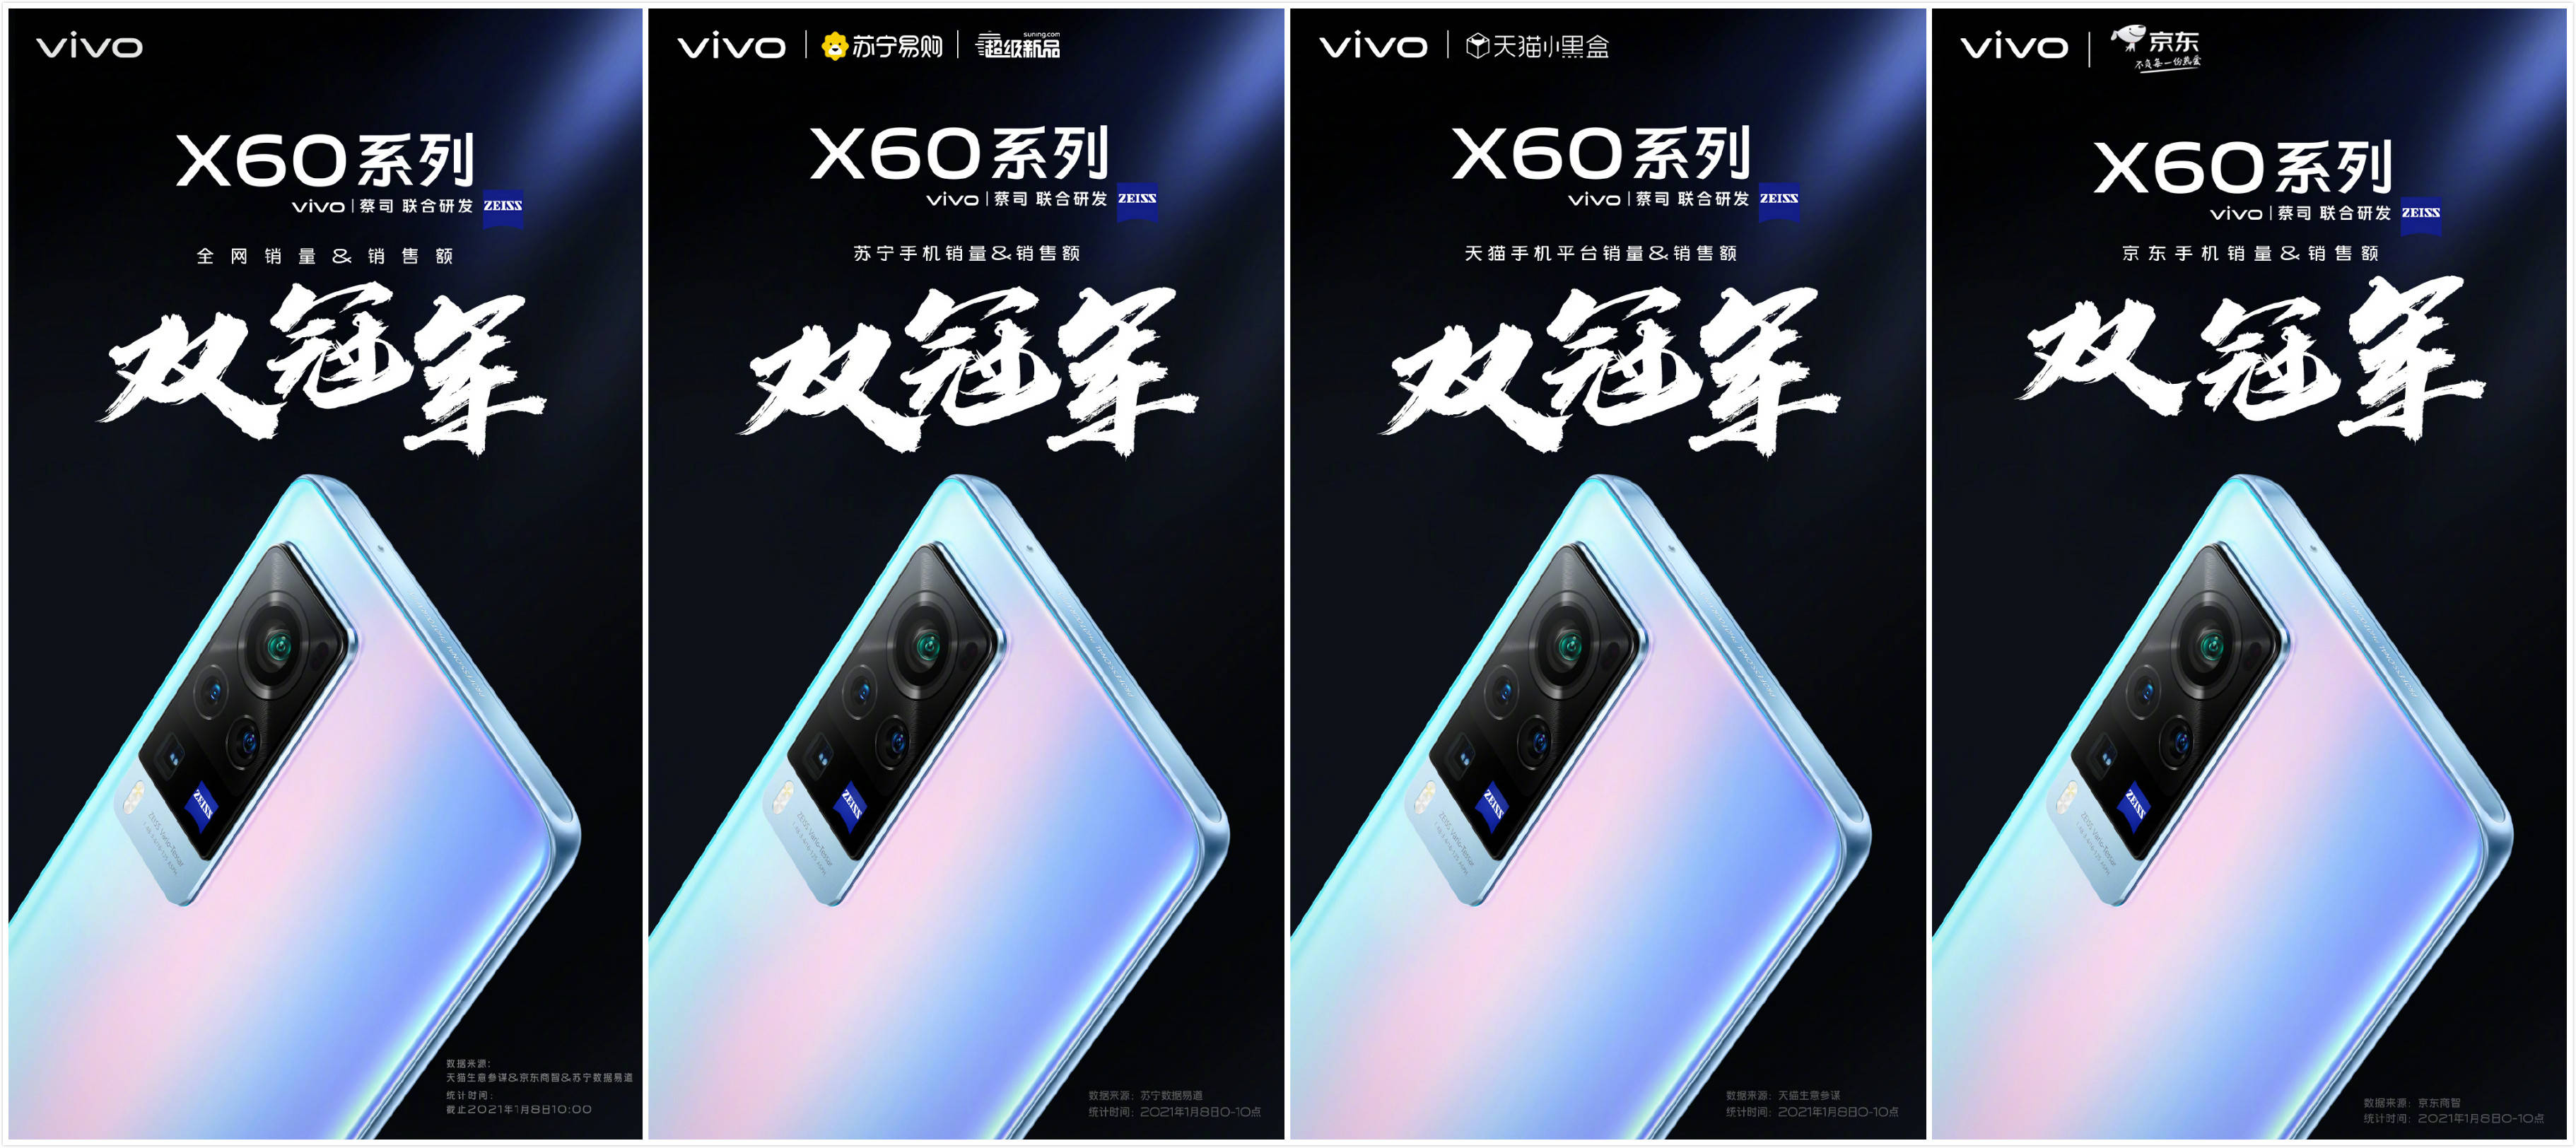 vivox60广告图片